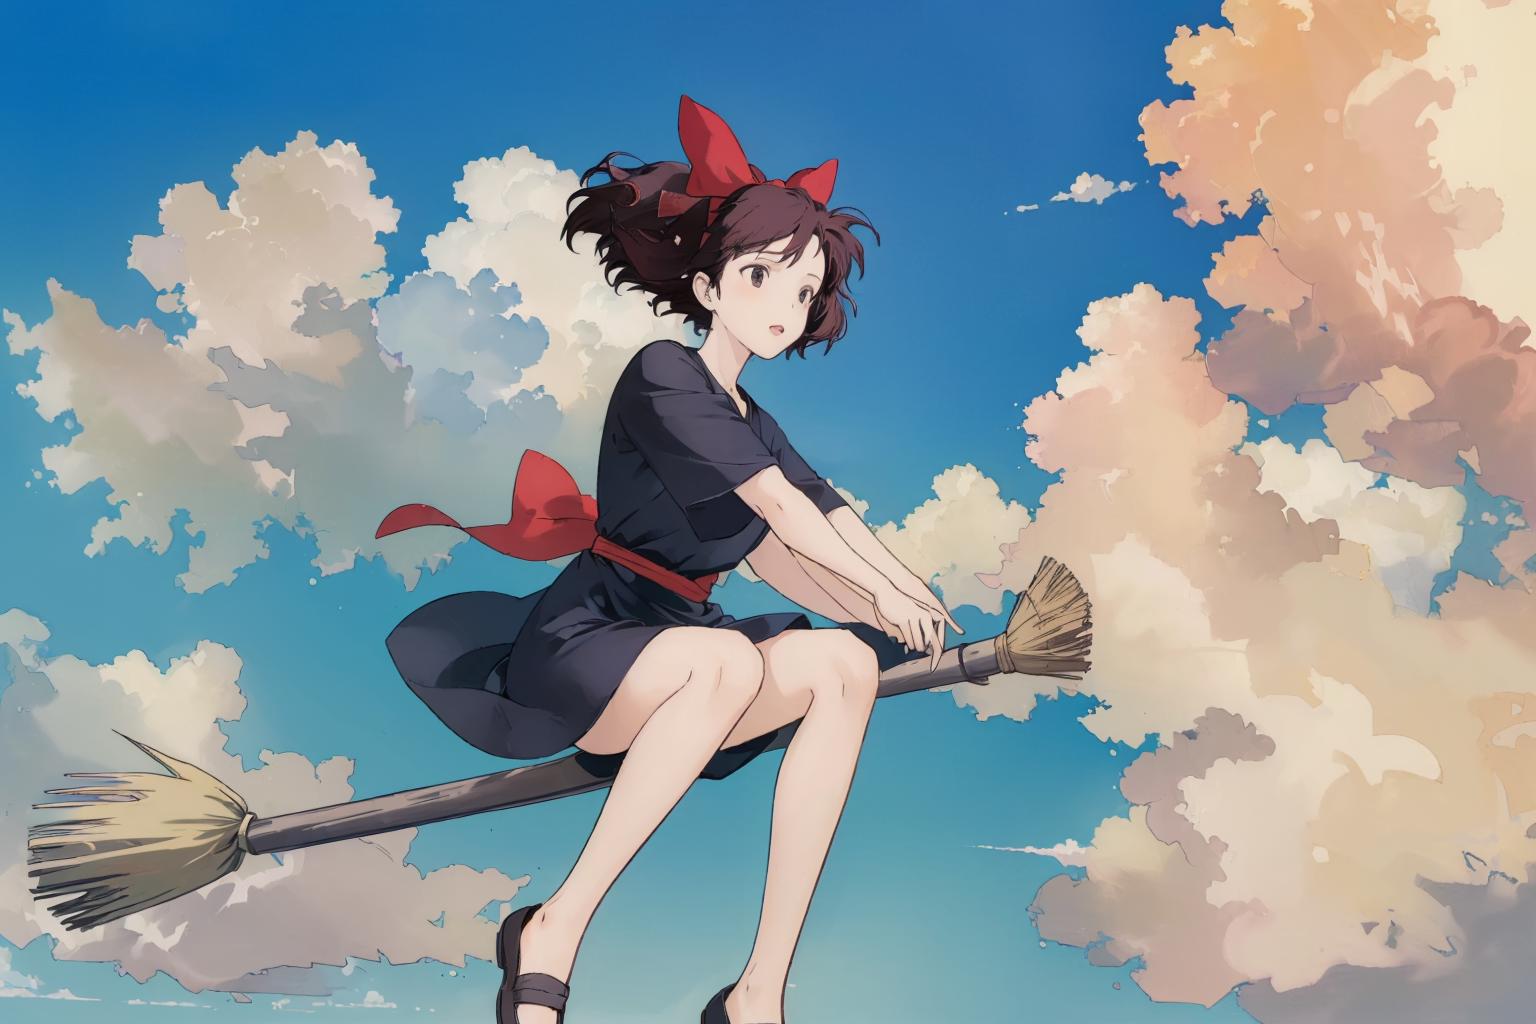 Ghibli - Kiki's Delivery Service - Kiki and Jiji image by ChaosOrchestrator